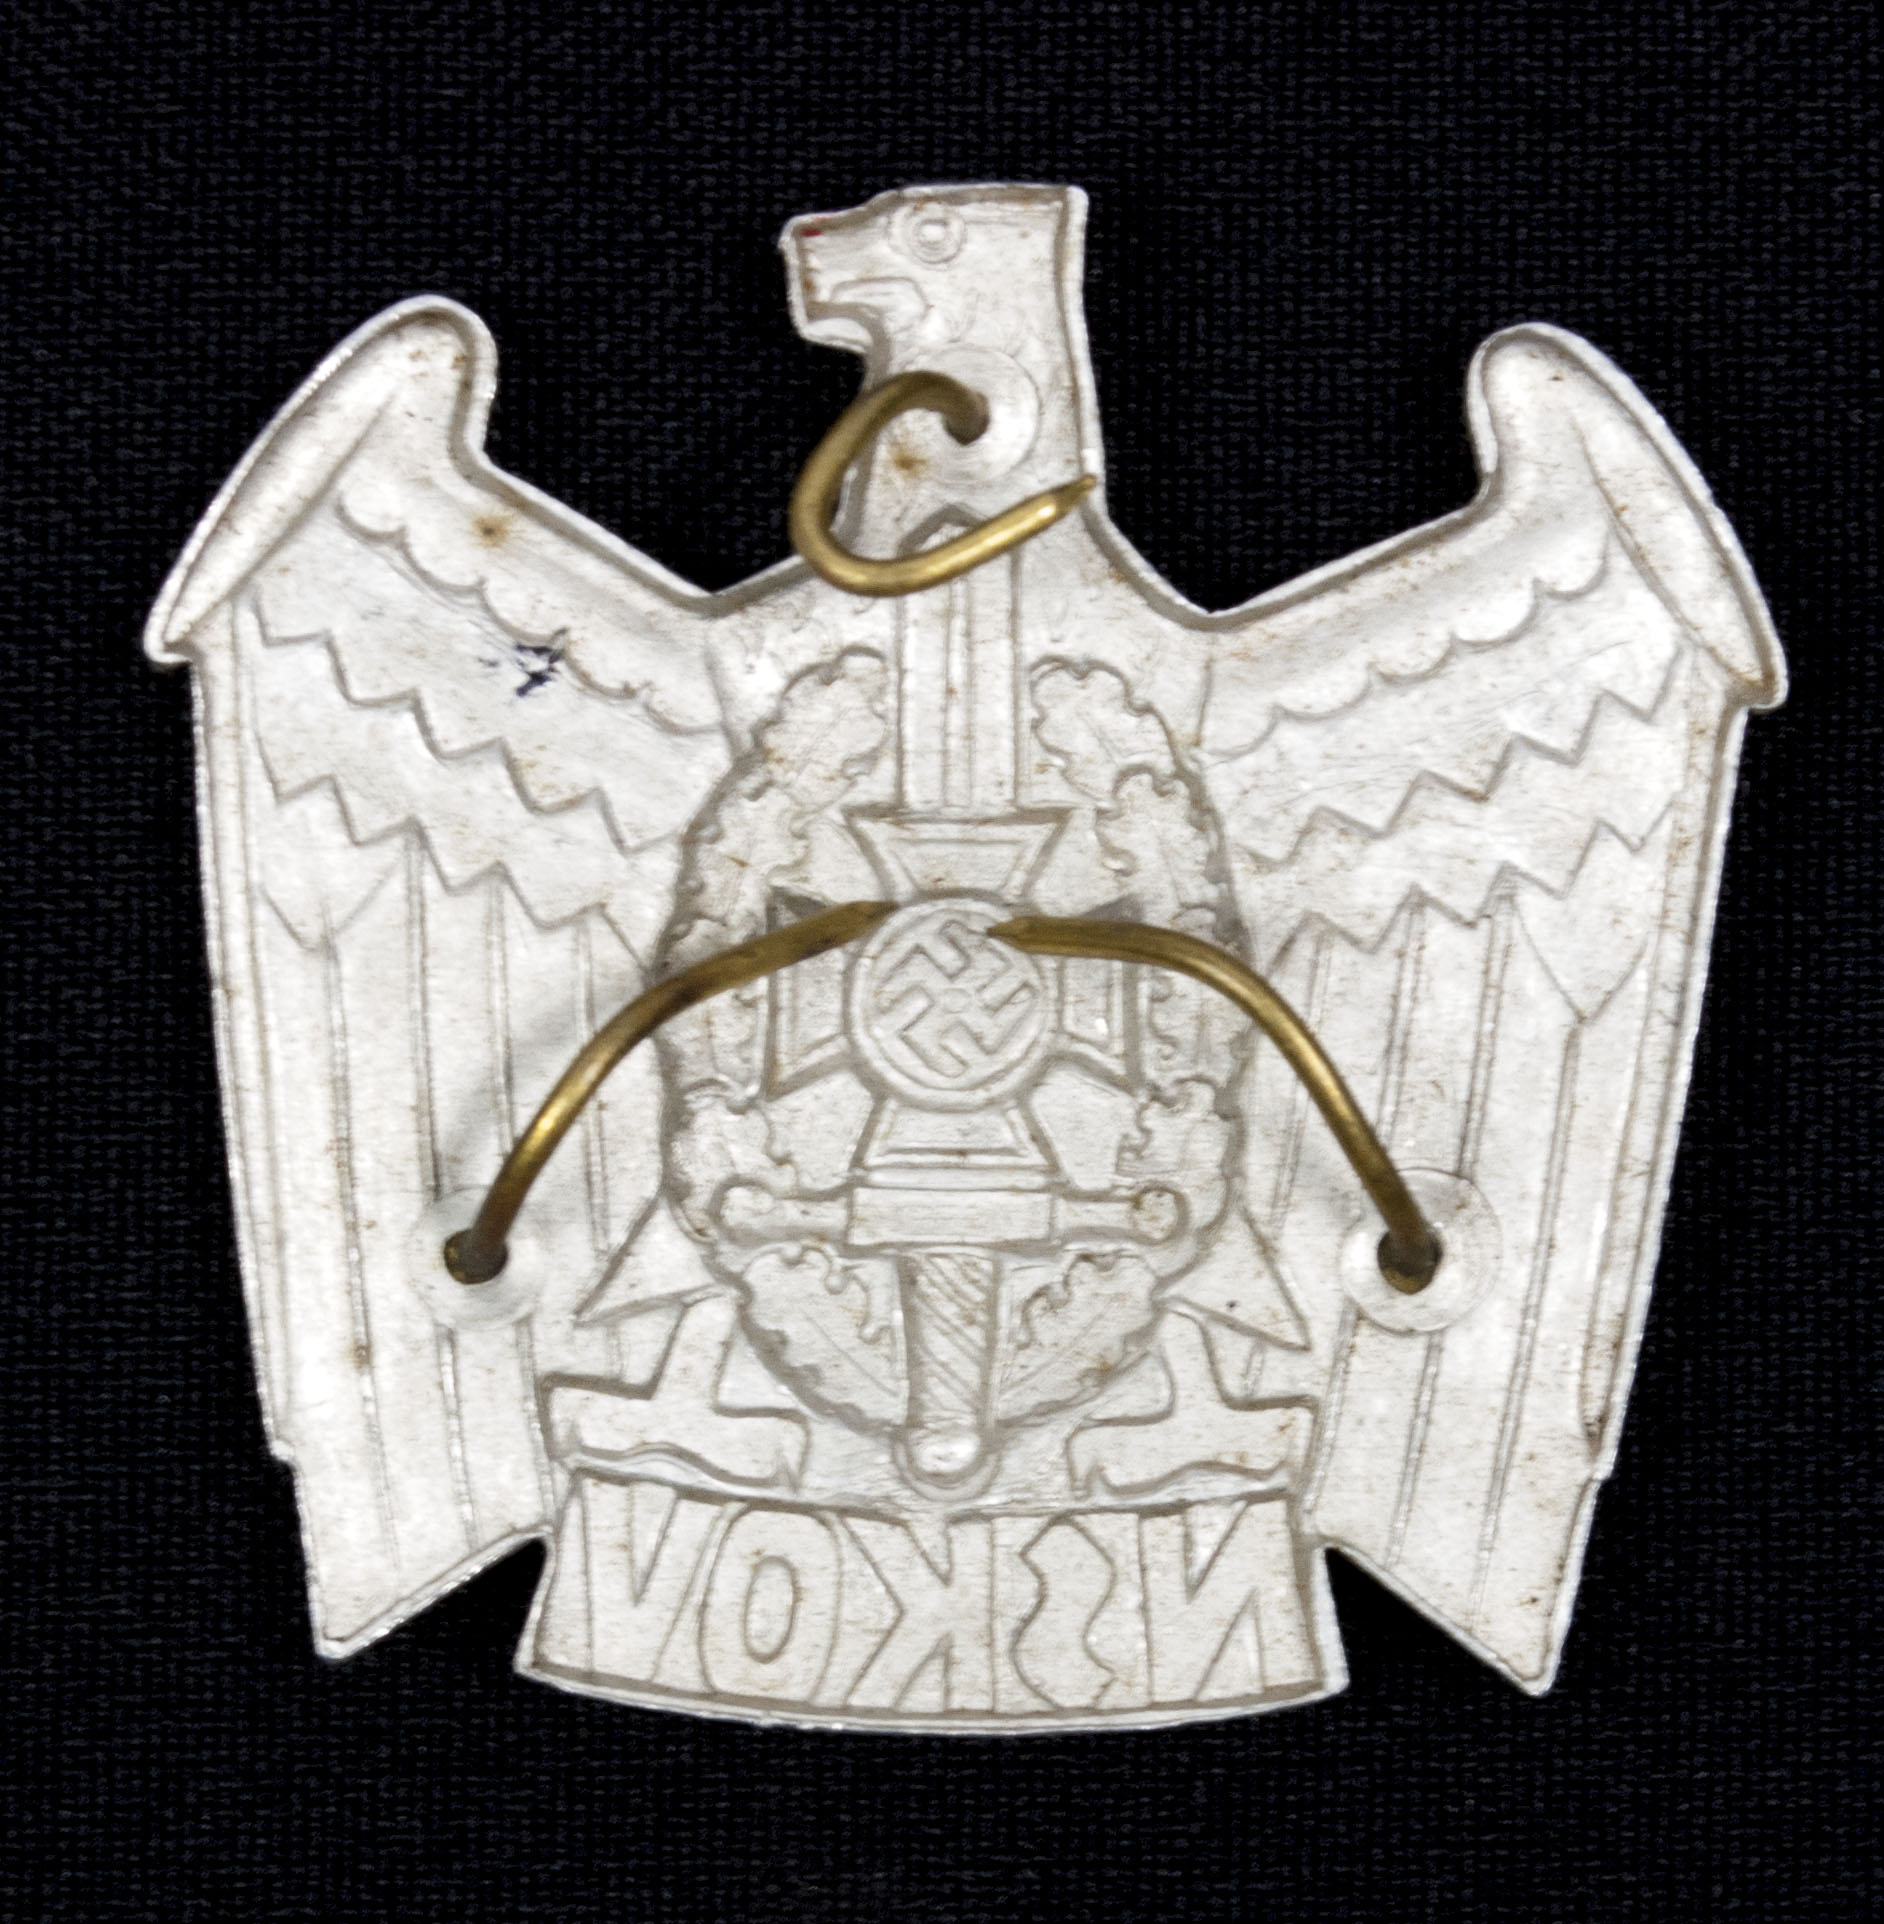 NSKOV cap badge